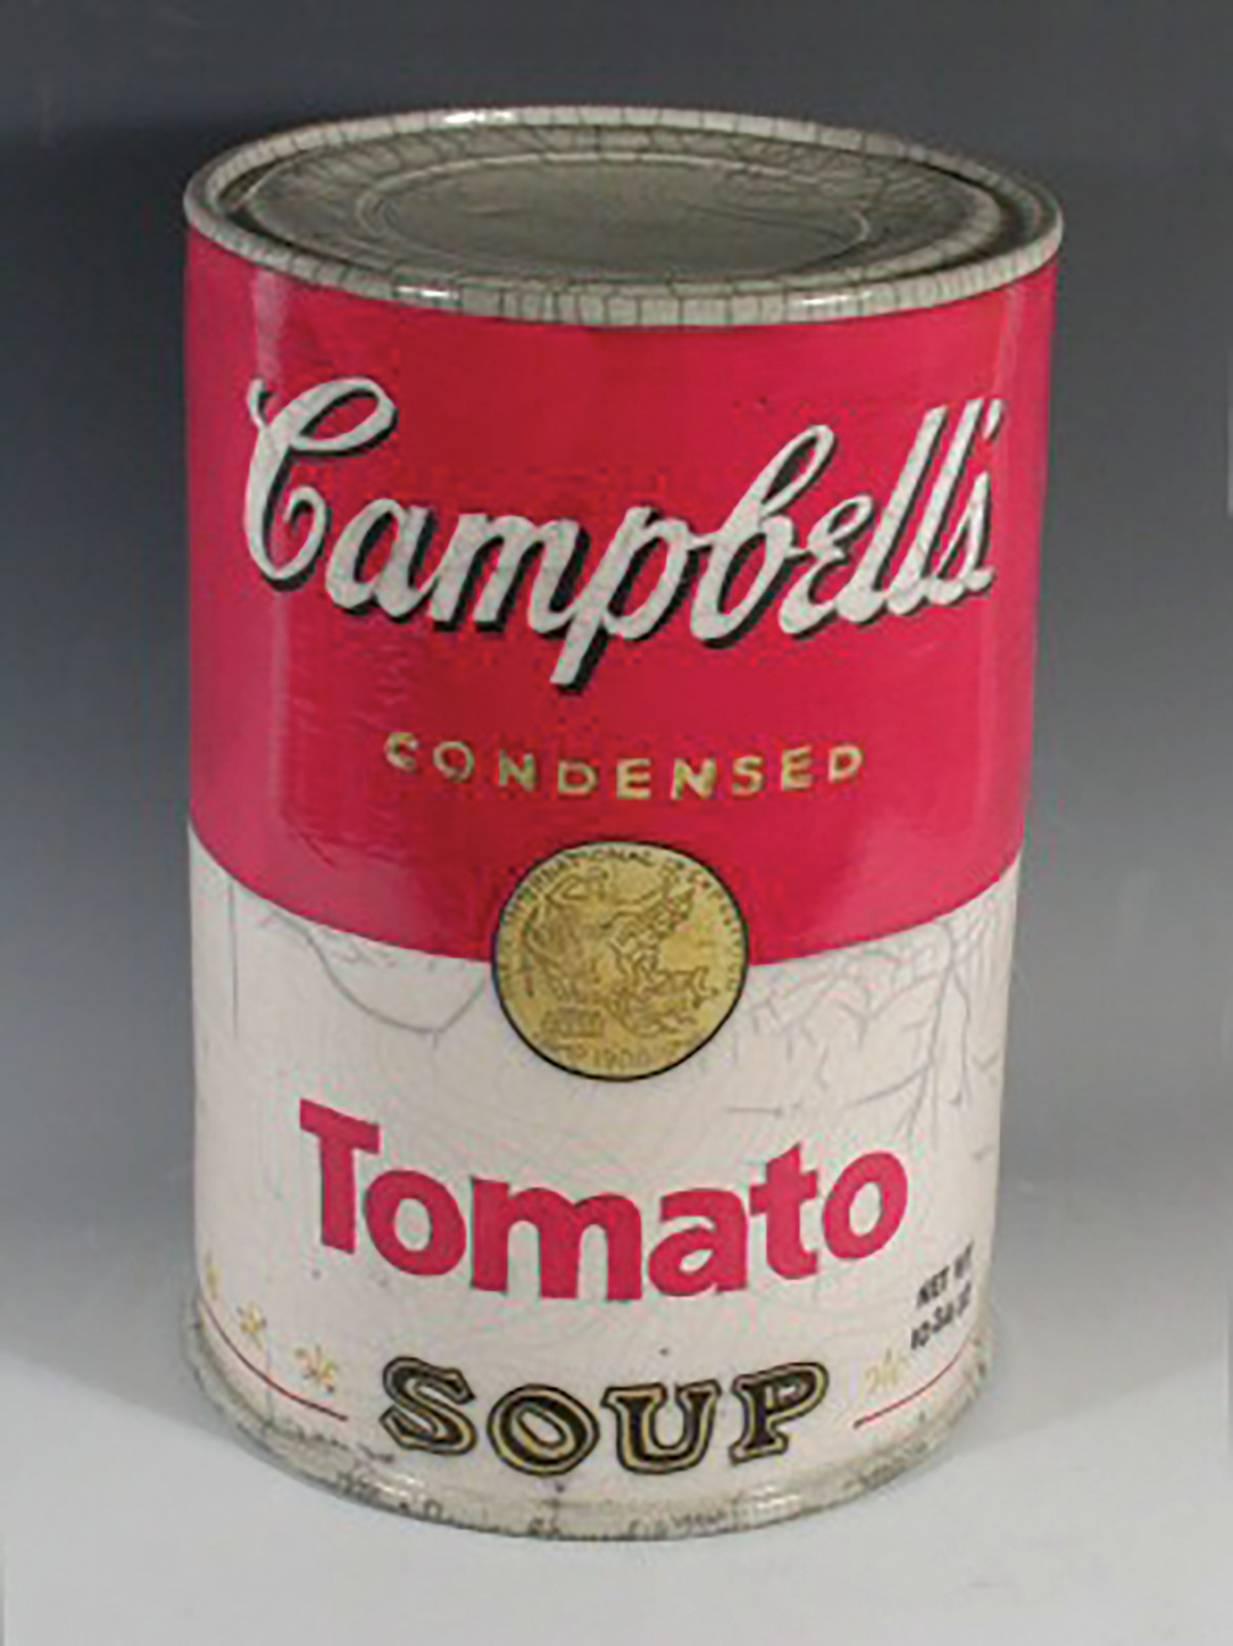 Karen Shapiro Still-Life Sculpture - "Campbell's Soup Can"